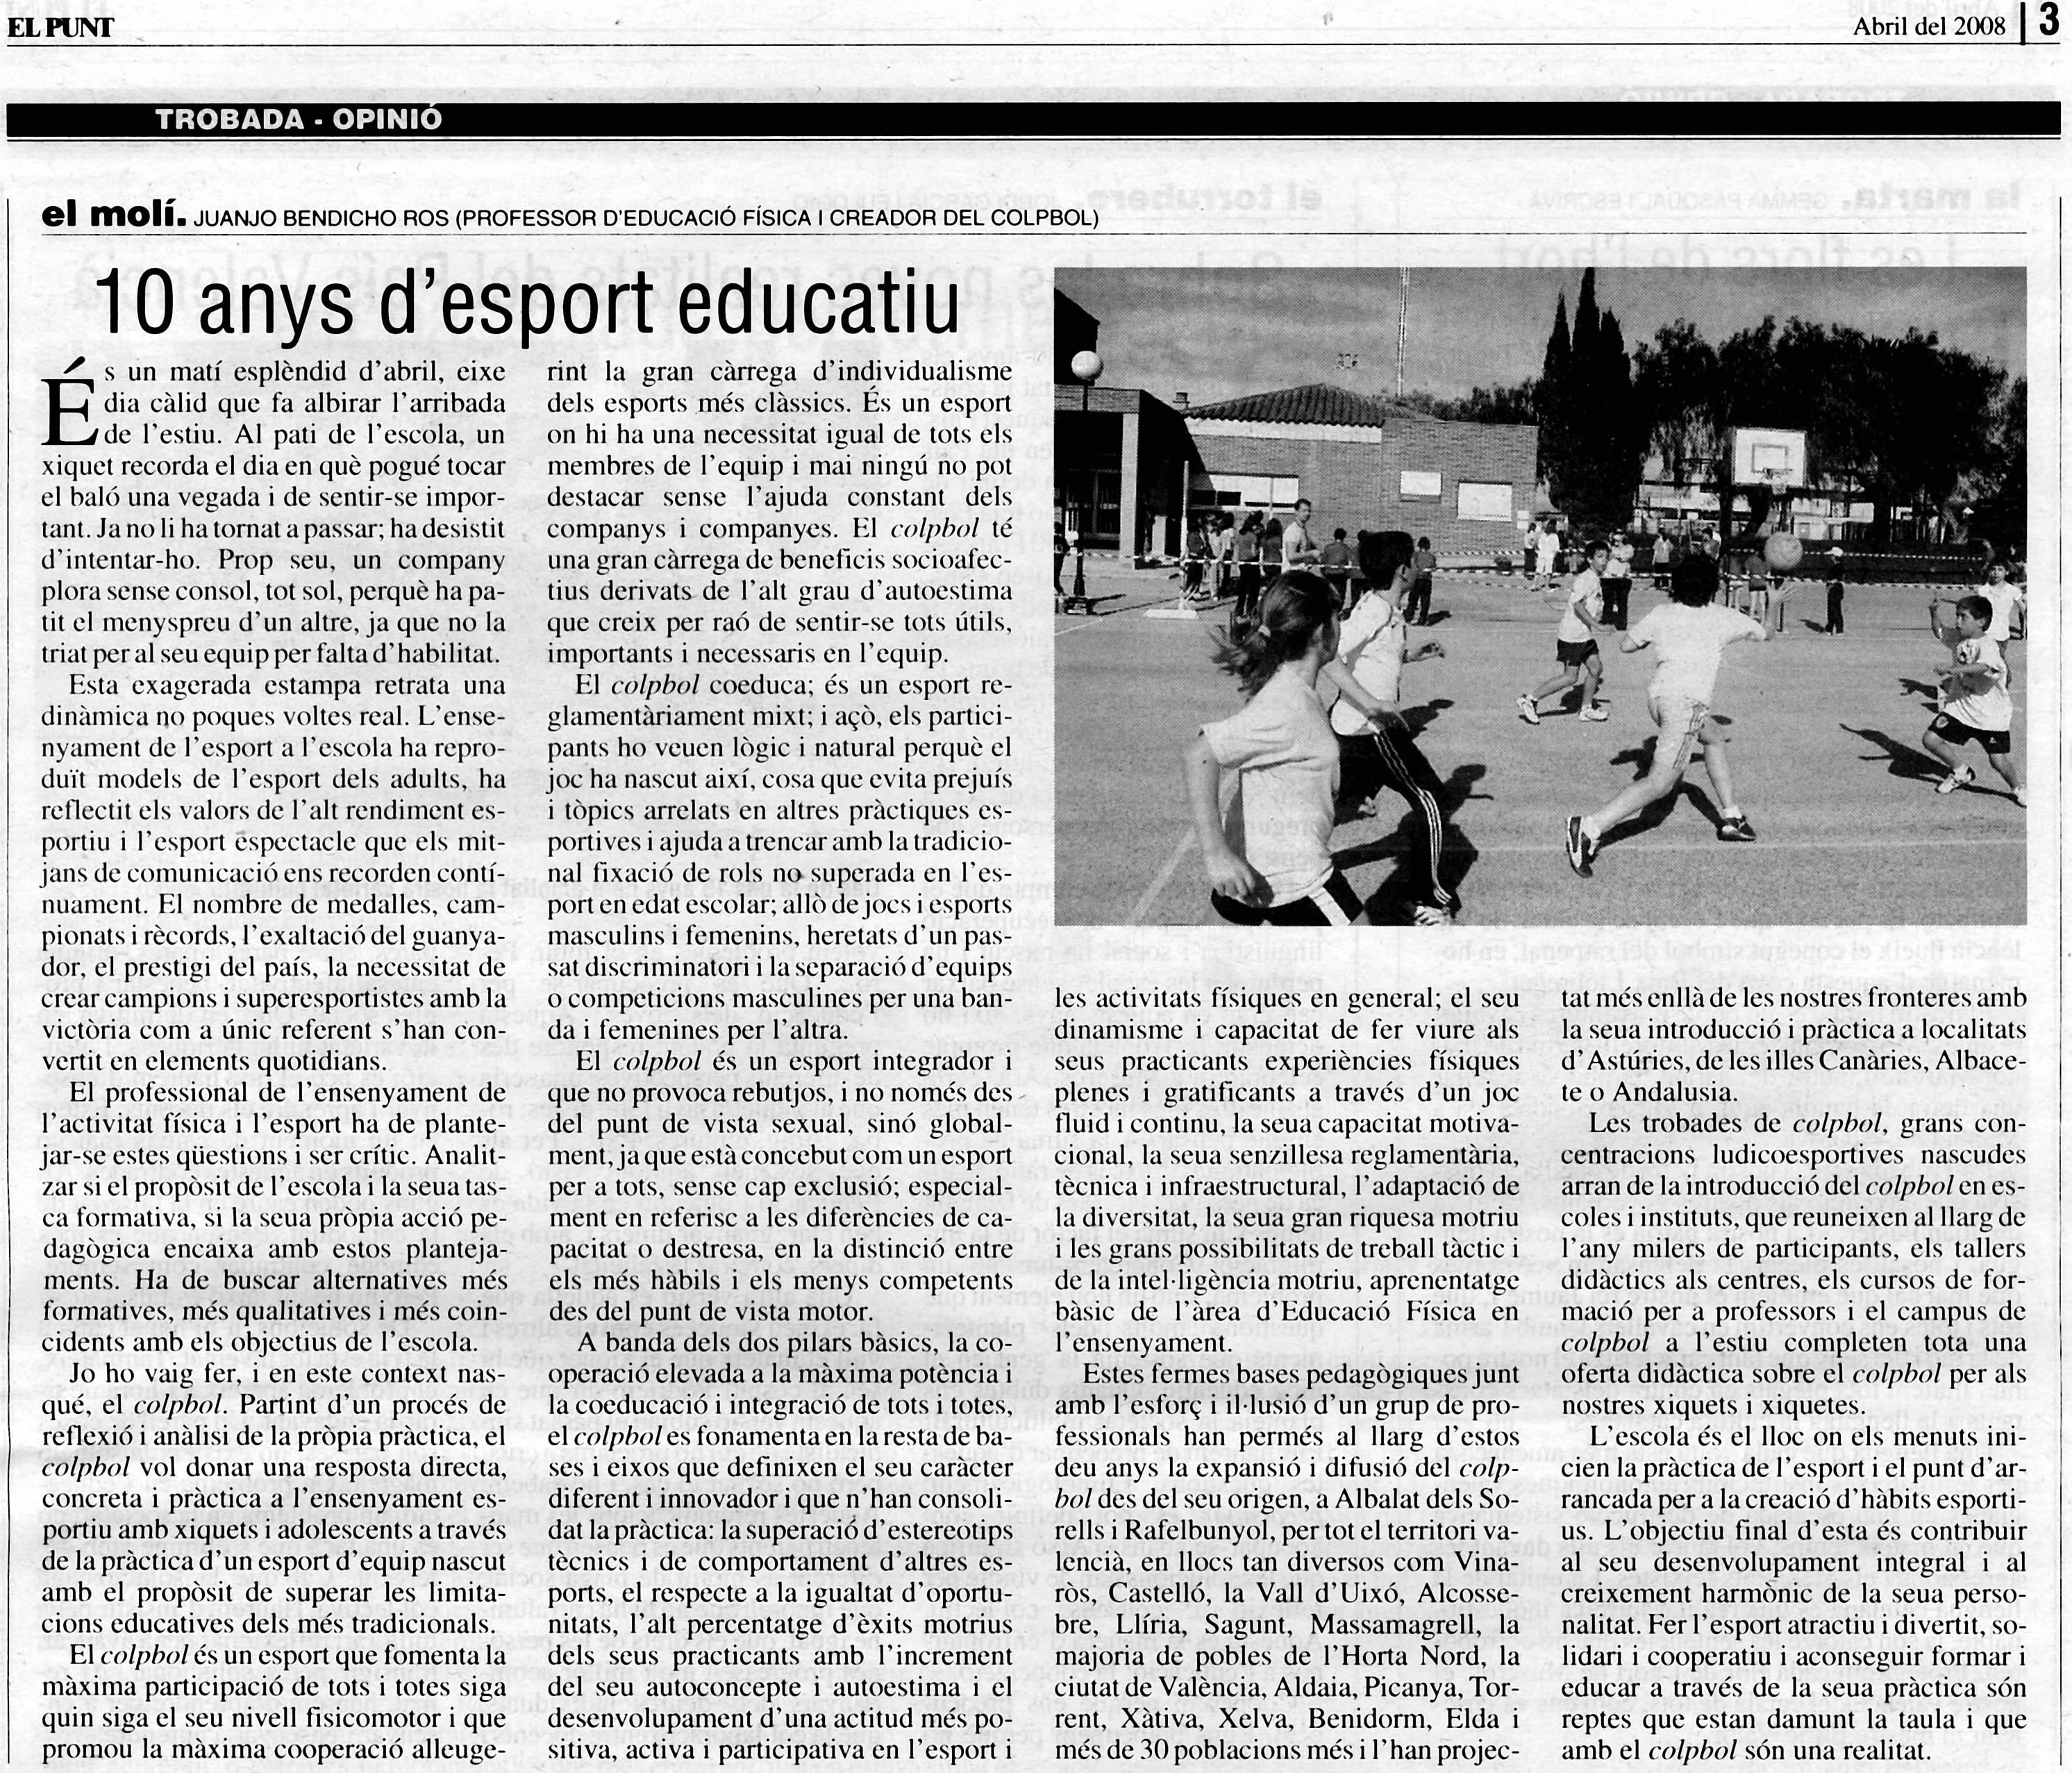 10 años de deporte educativo (Artículo publicado en El Punt)